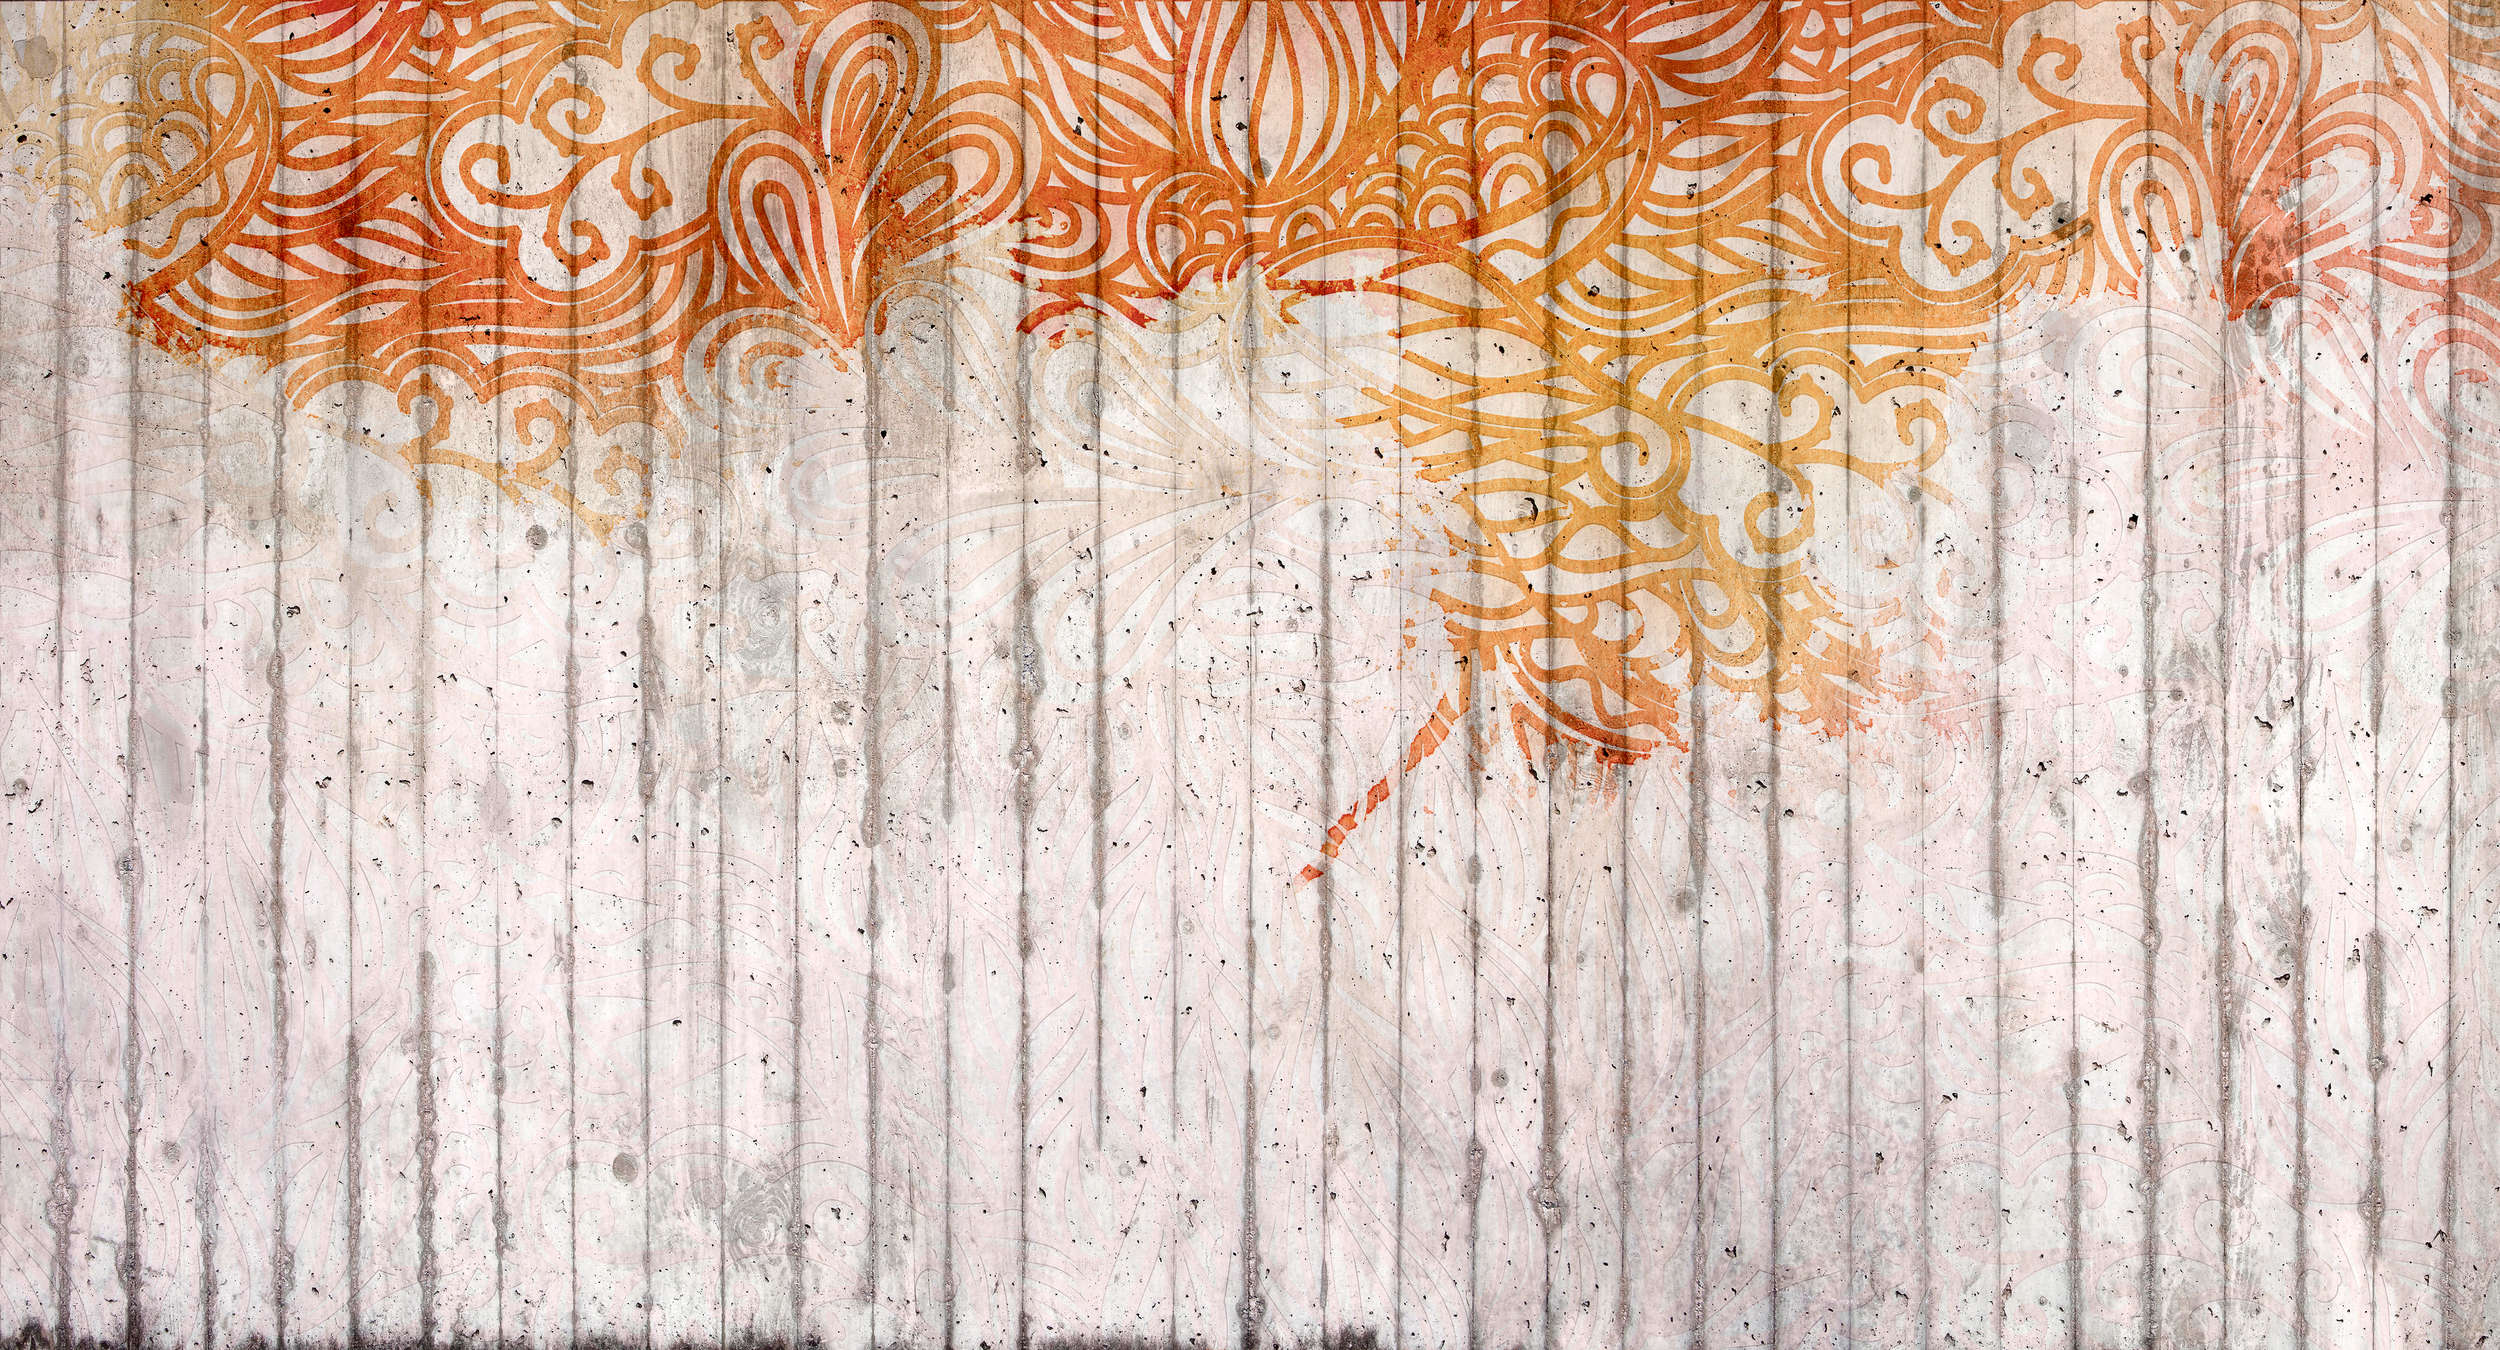             Mural de adorno de hormigón estilo garabato - Naranja, Gris, Rojo
        